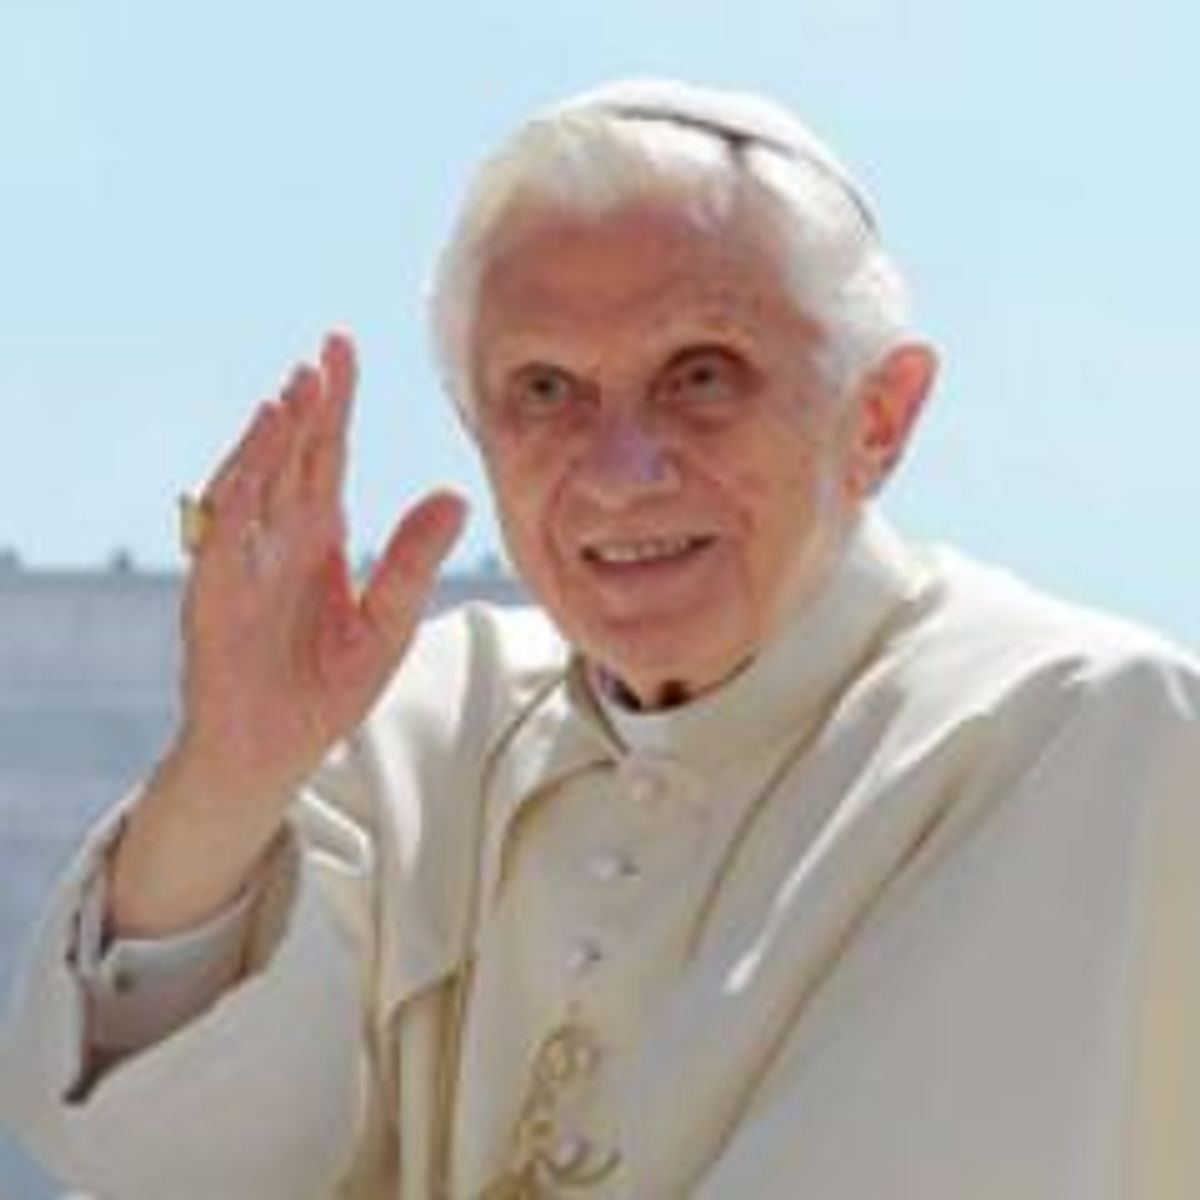  Pope Benedict XVI's Twitter profile photo (via @pontifex)